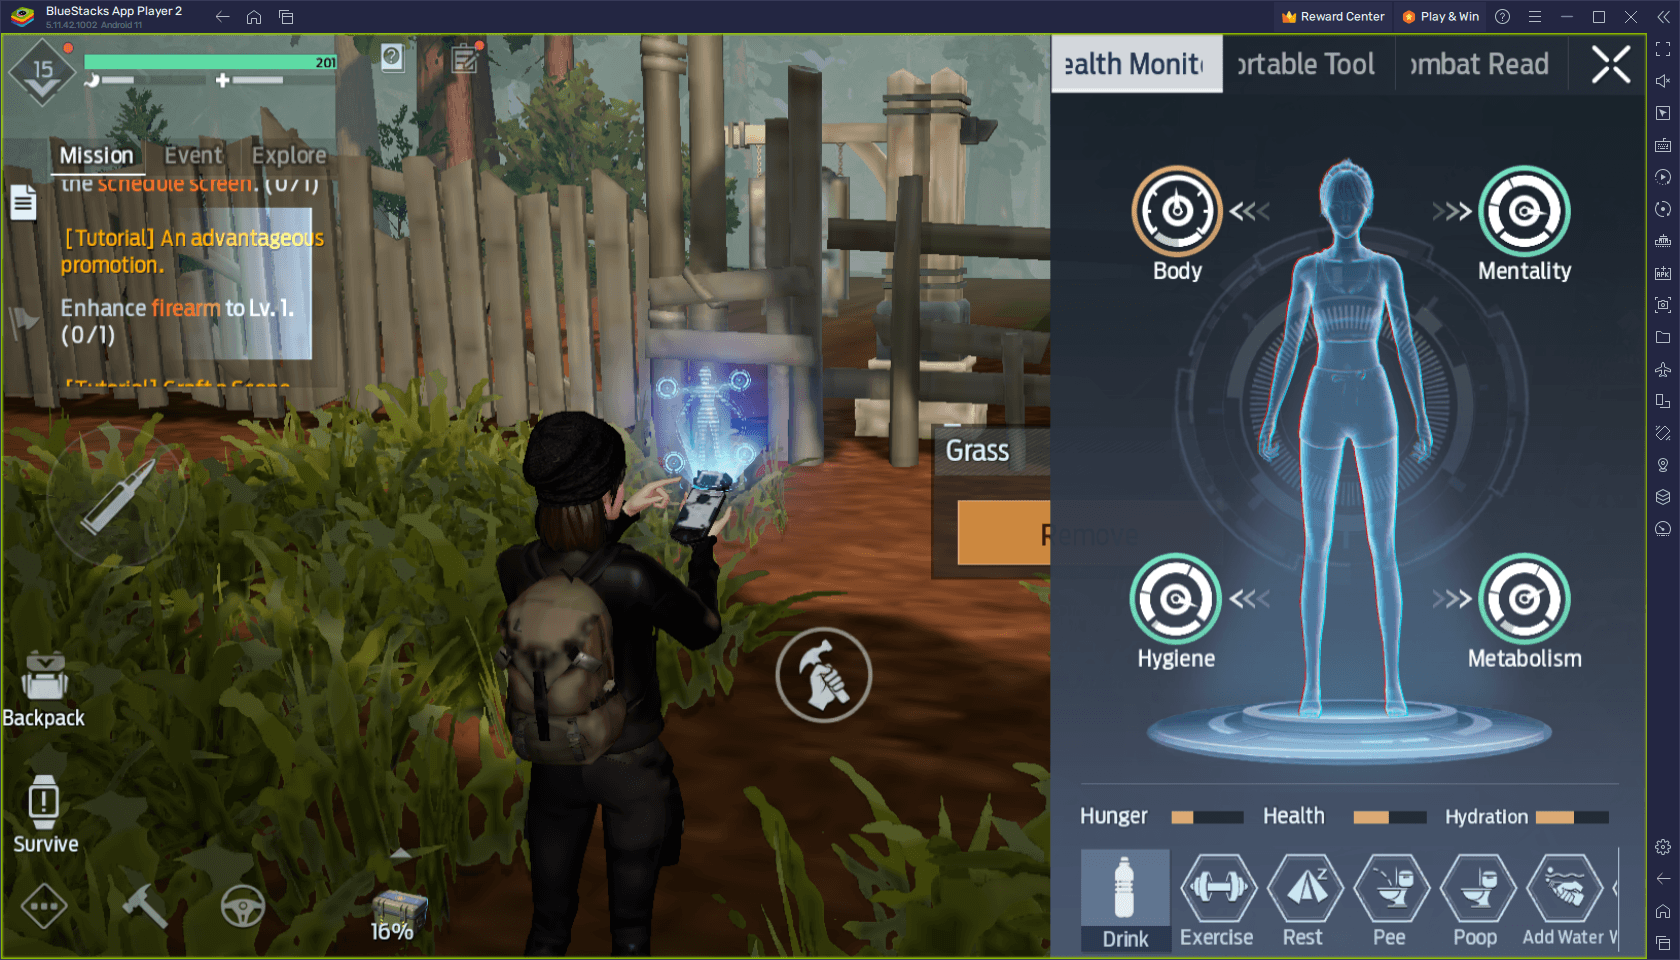 Dica: Undawn, jogo mobile de sobrevivência pós-apocalíptico de